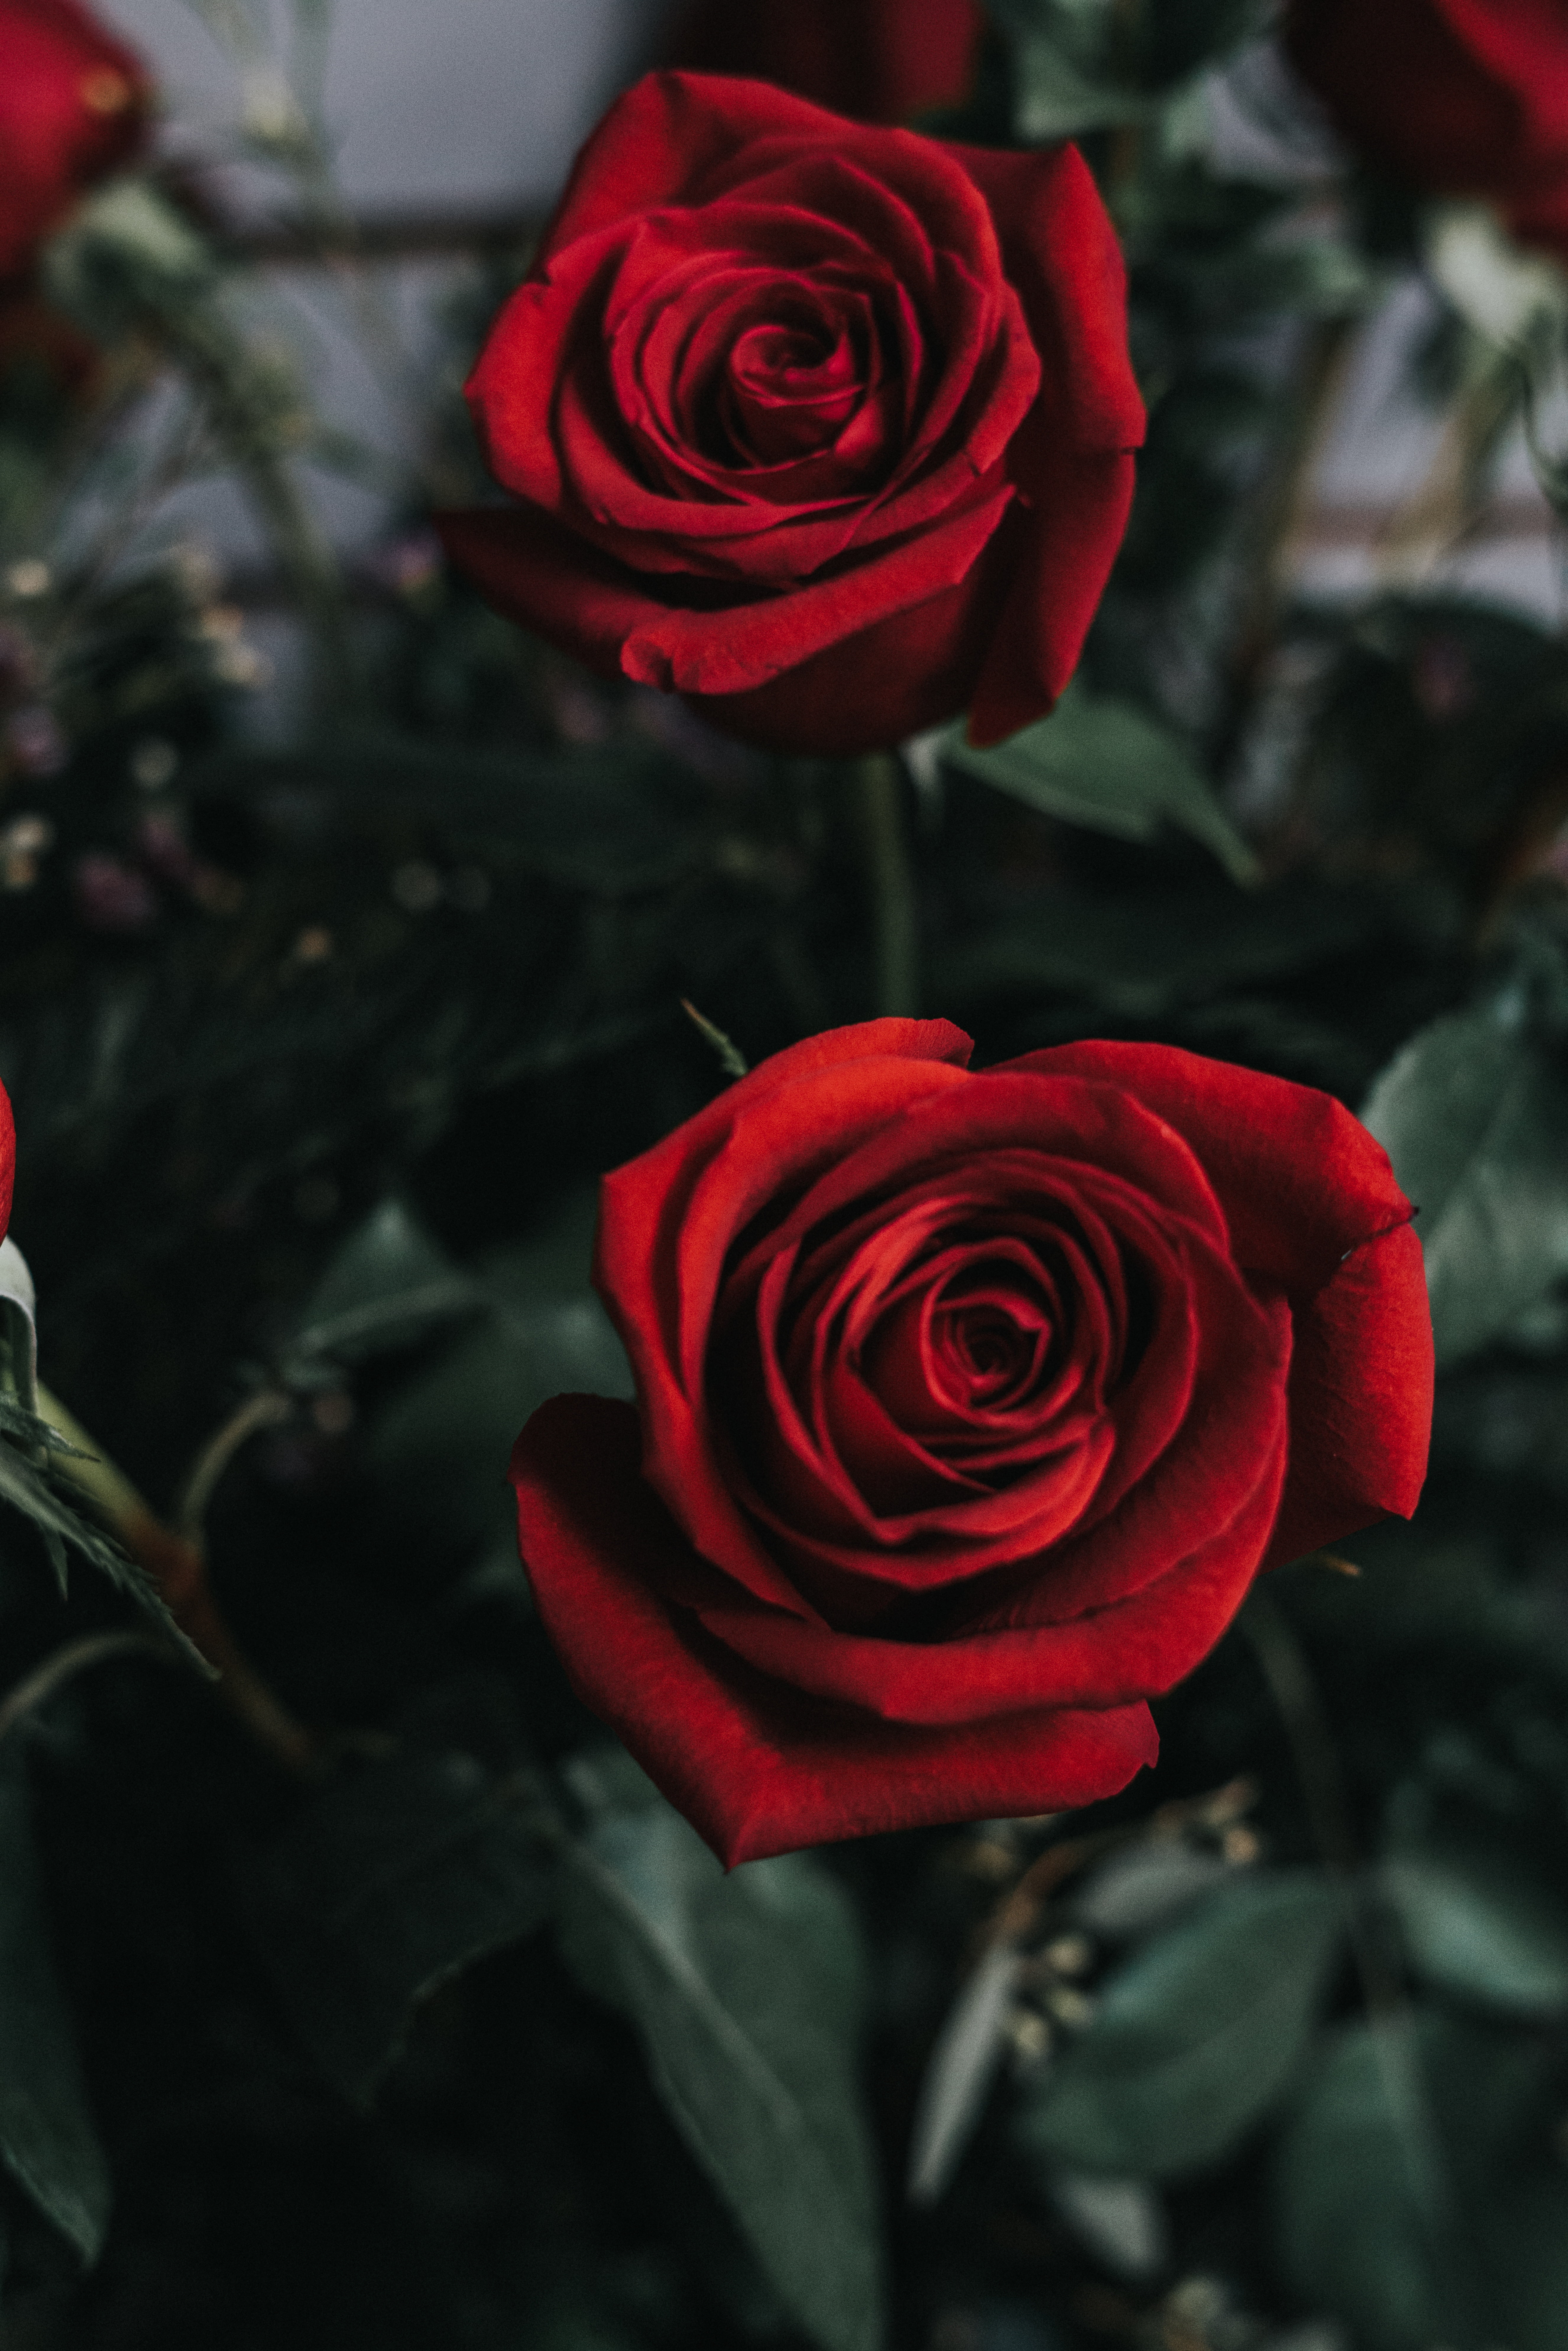 Hoa hồng đỏ luôn là biểu tượng tuyệt vời cho tình yêu và sự trân quý. Hãy xem hình ảnh hoa hồng đỏ để cảm nhận sự đẹp đẽ và quý giá của chúng. Không gì thể hiện tình cảm chân thành hơn một bó hoa hồng đỏ tươi thắm. Hãy để hình ảnh hoa hồng đỏ thôi thúc cảm xúc và lái đến một hành trình tuyệt vời của tình yêu.